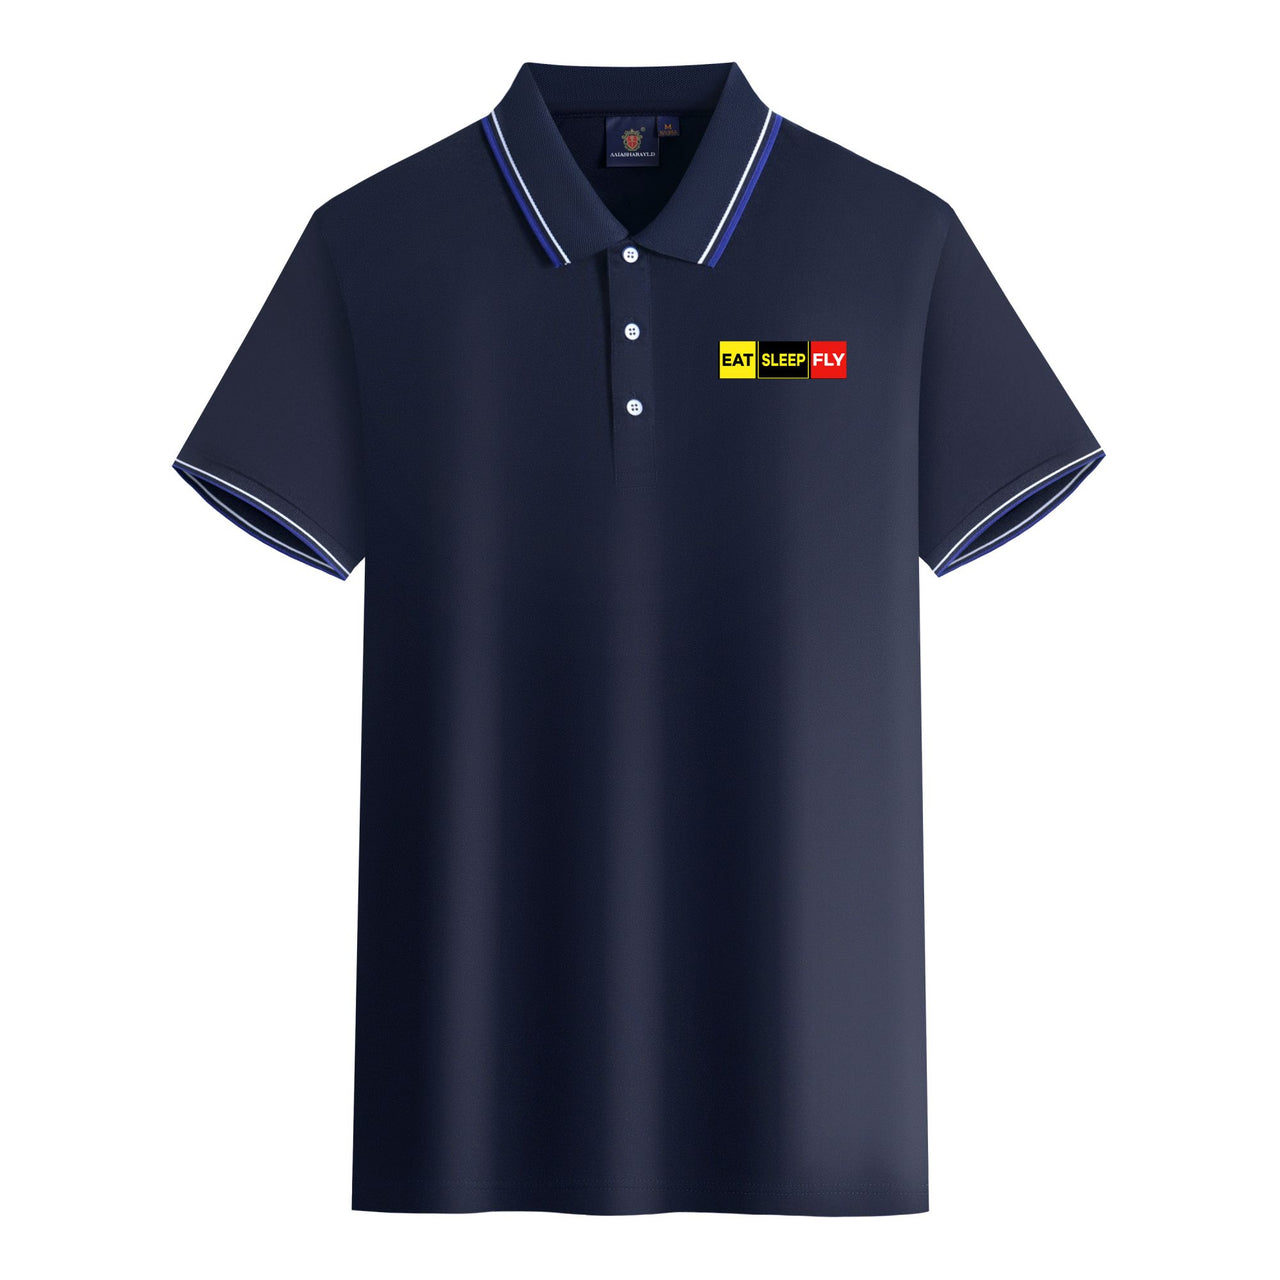 Eat Sleep Fly (Colourful) Designed Stylish Polo T-Shirts